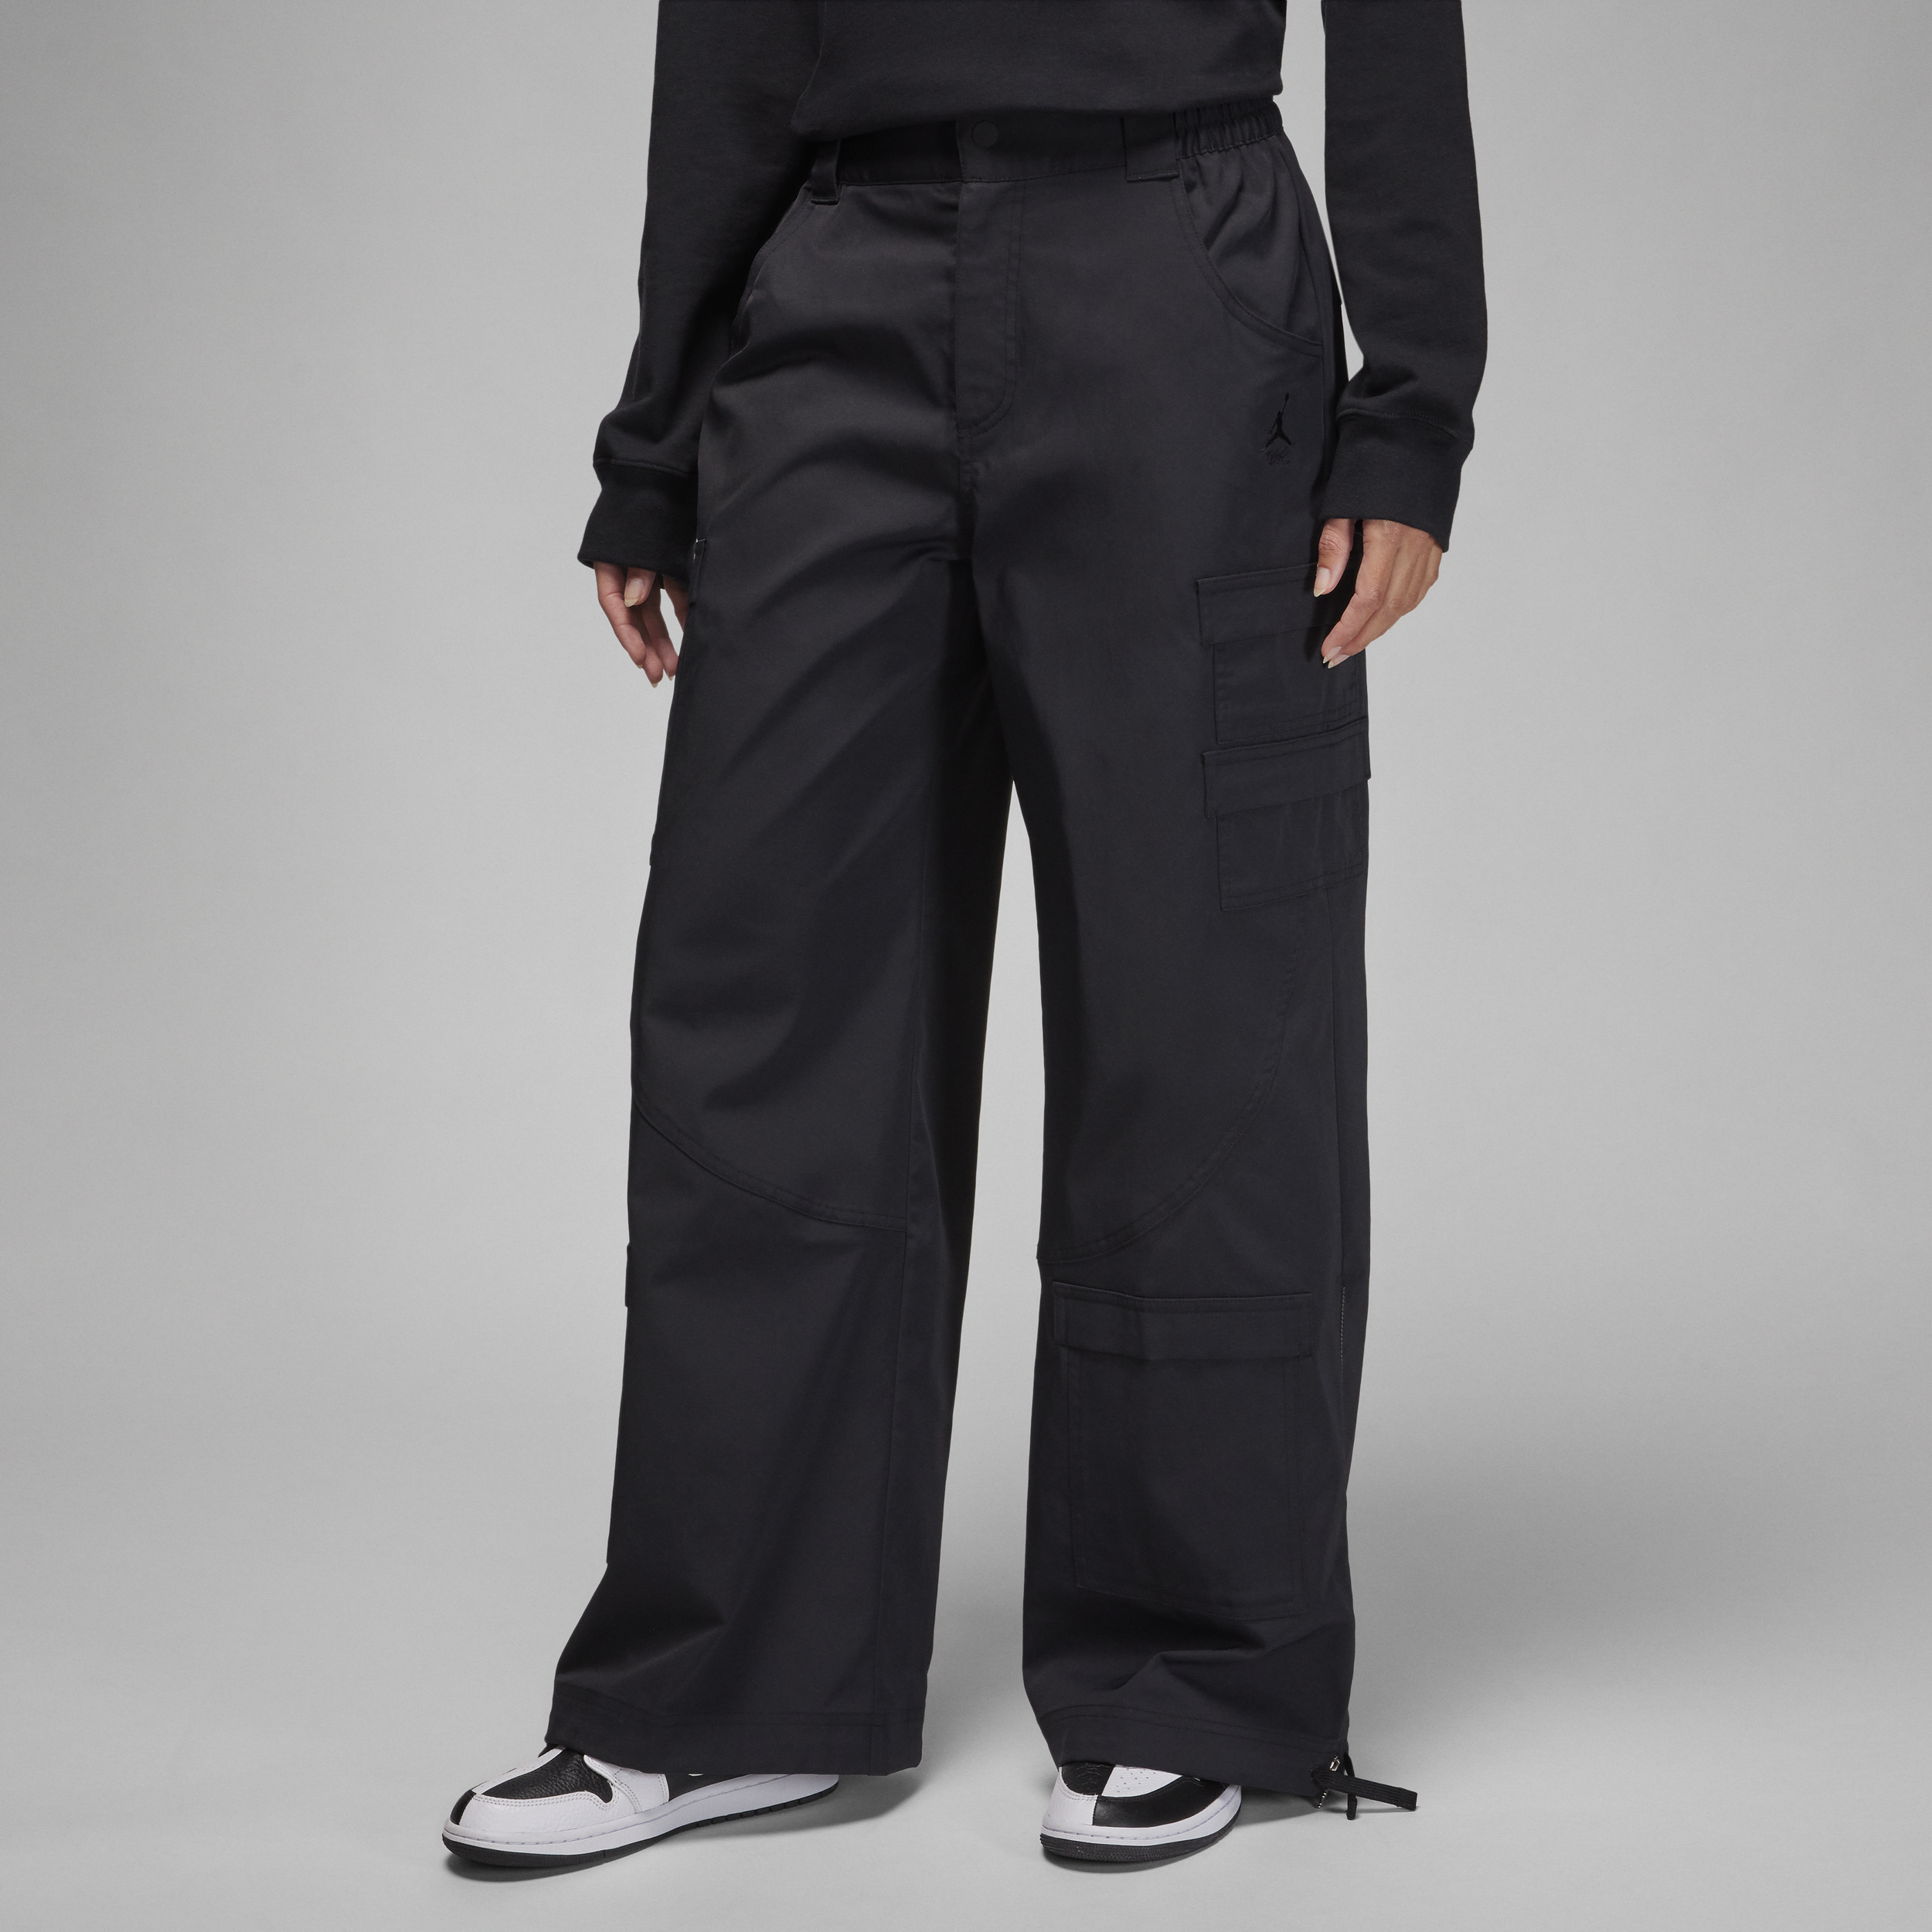 Nike Pantaloni Chicago pesanti Jordan – Donna - Nero